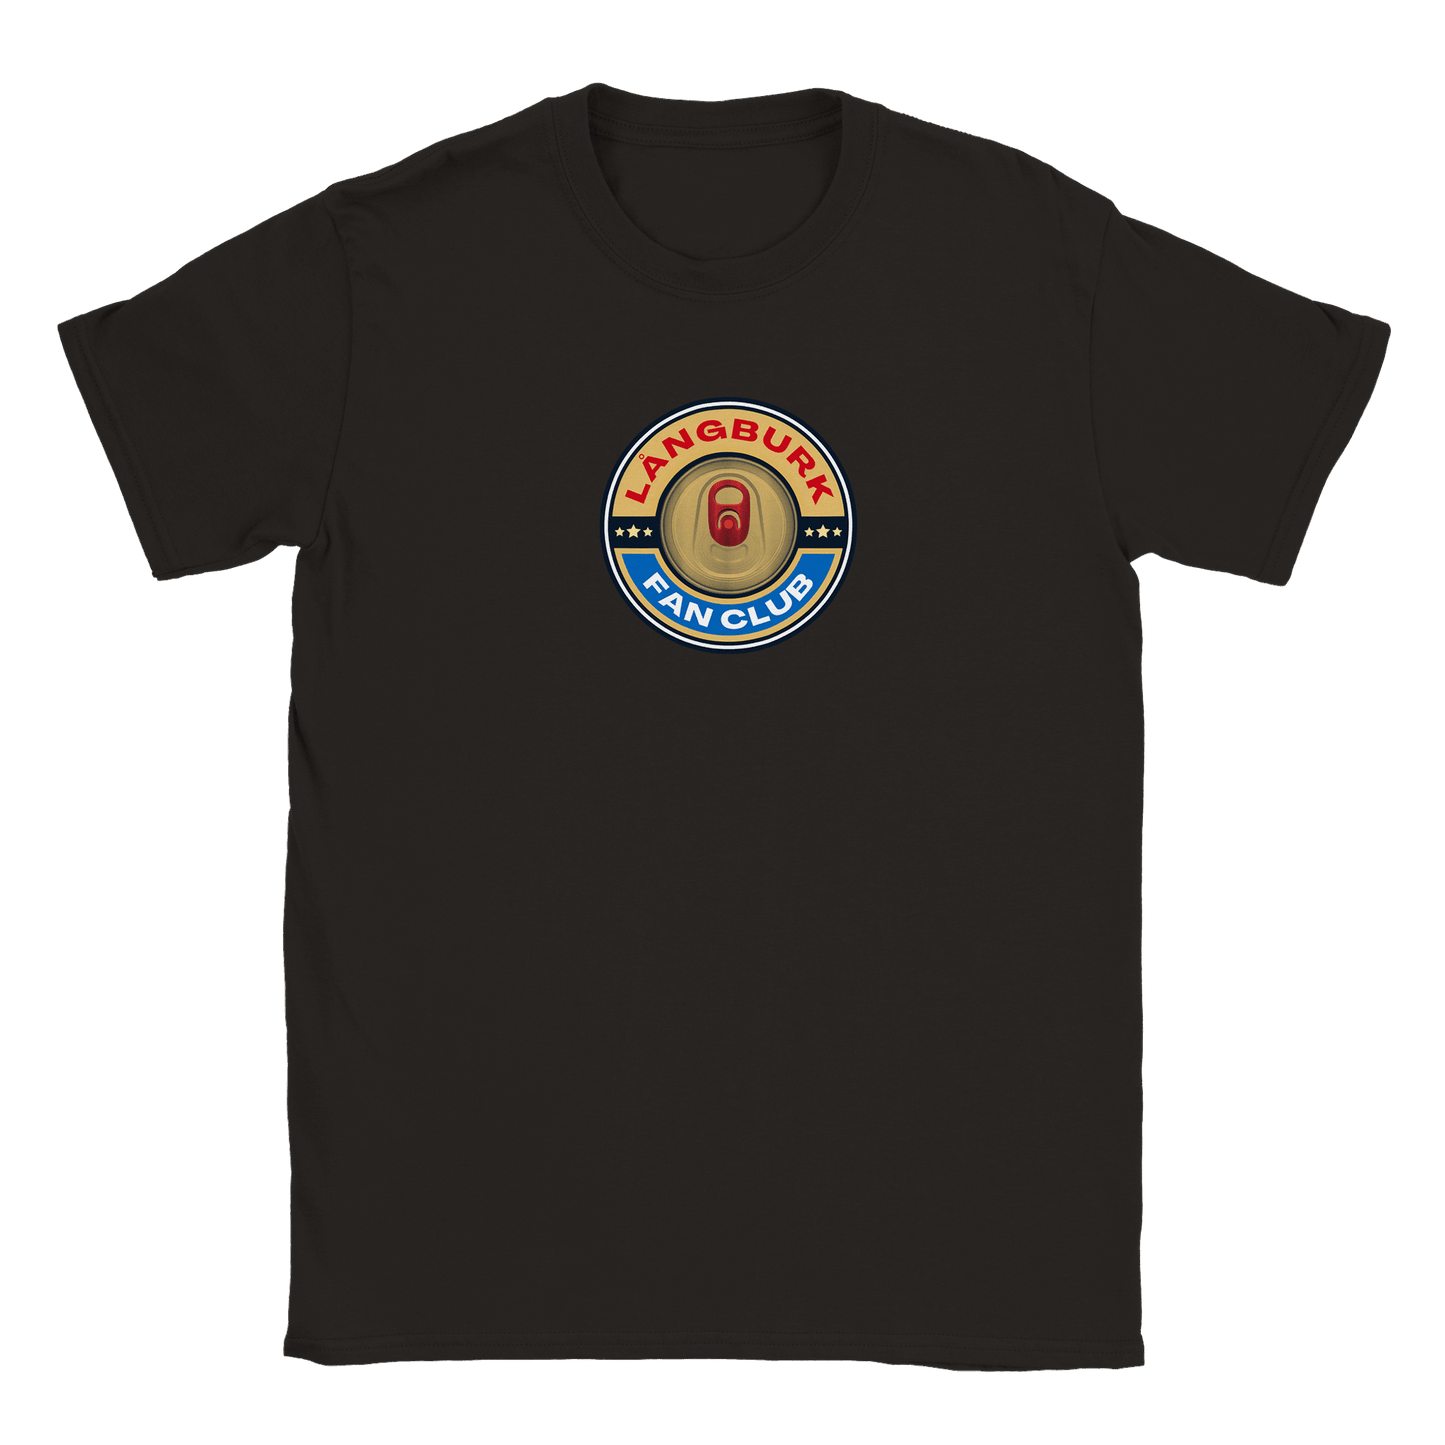 Långburk Fan Club Norrland Edition - T-shirt Svart